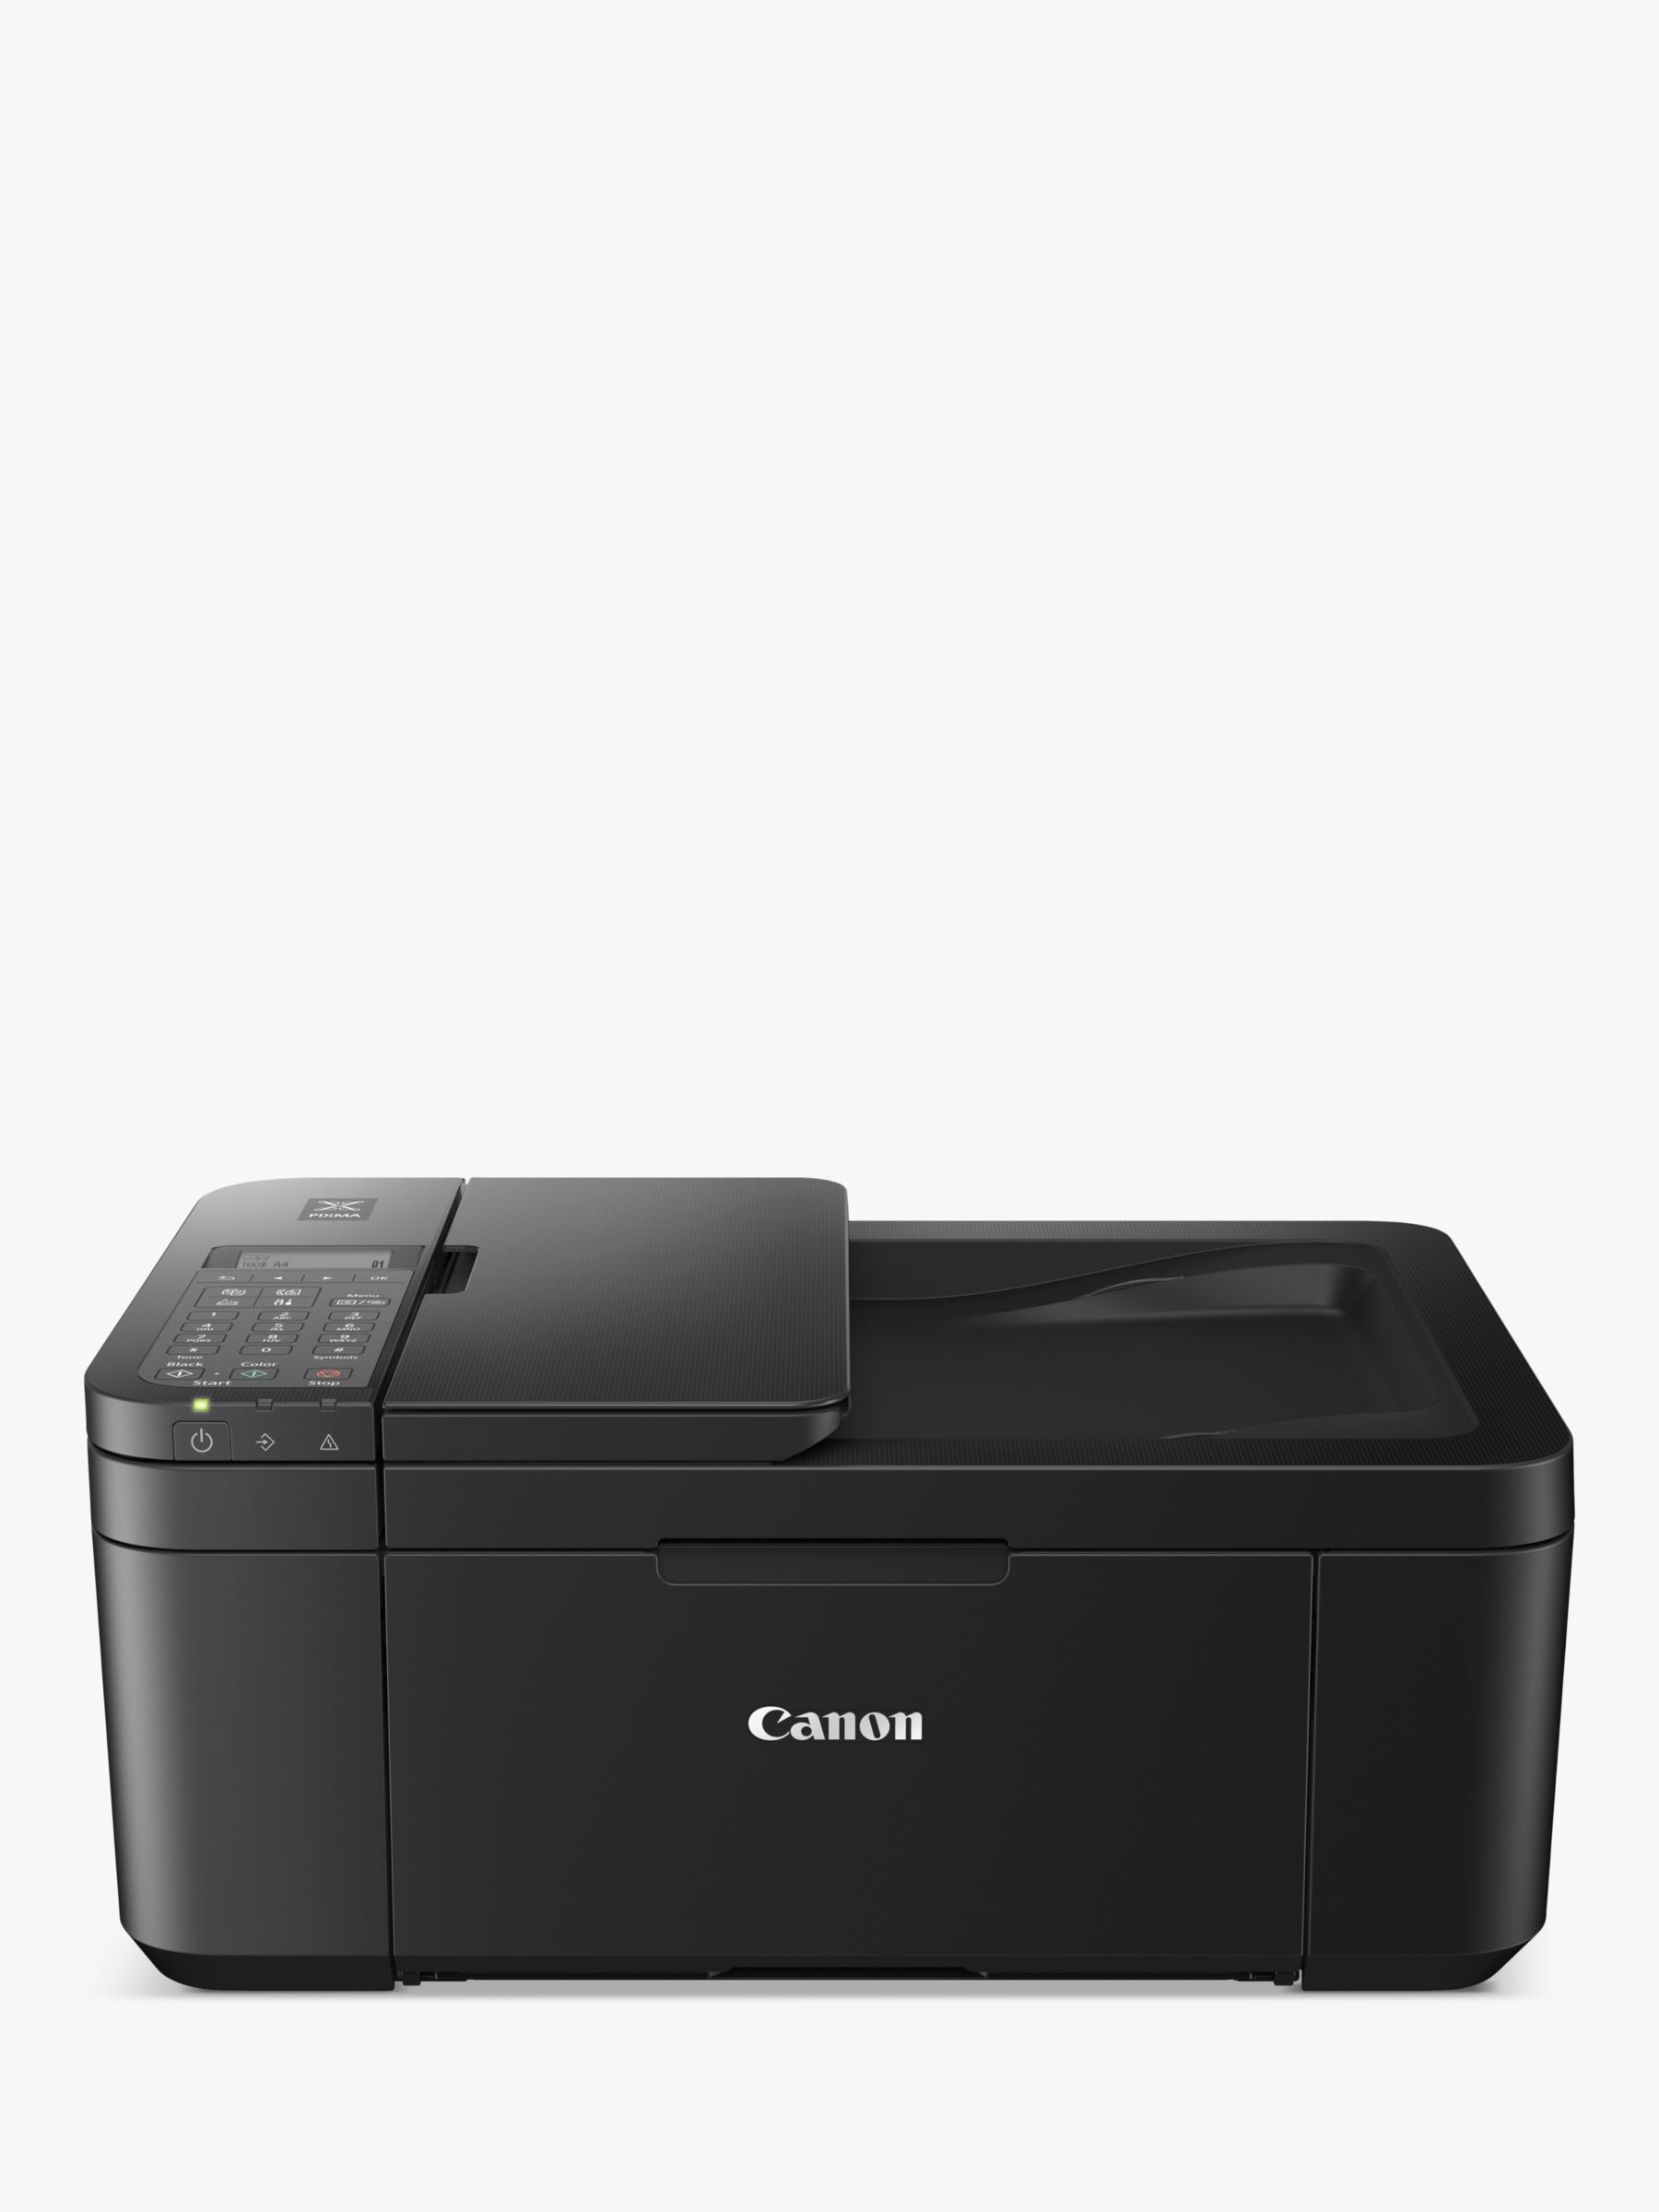 Black Wi-Fi Canon Wireless Printer, TR4750i PIXMA All-in-One